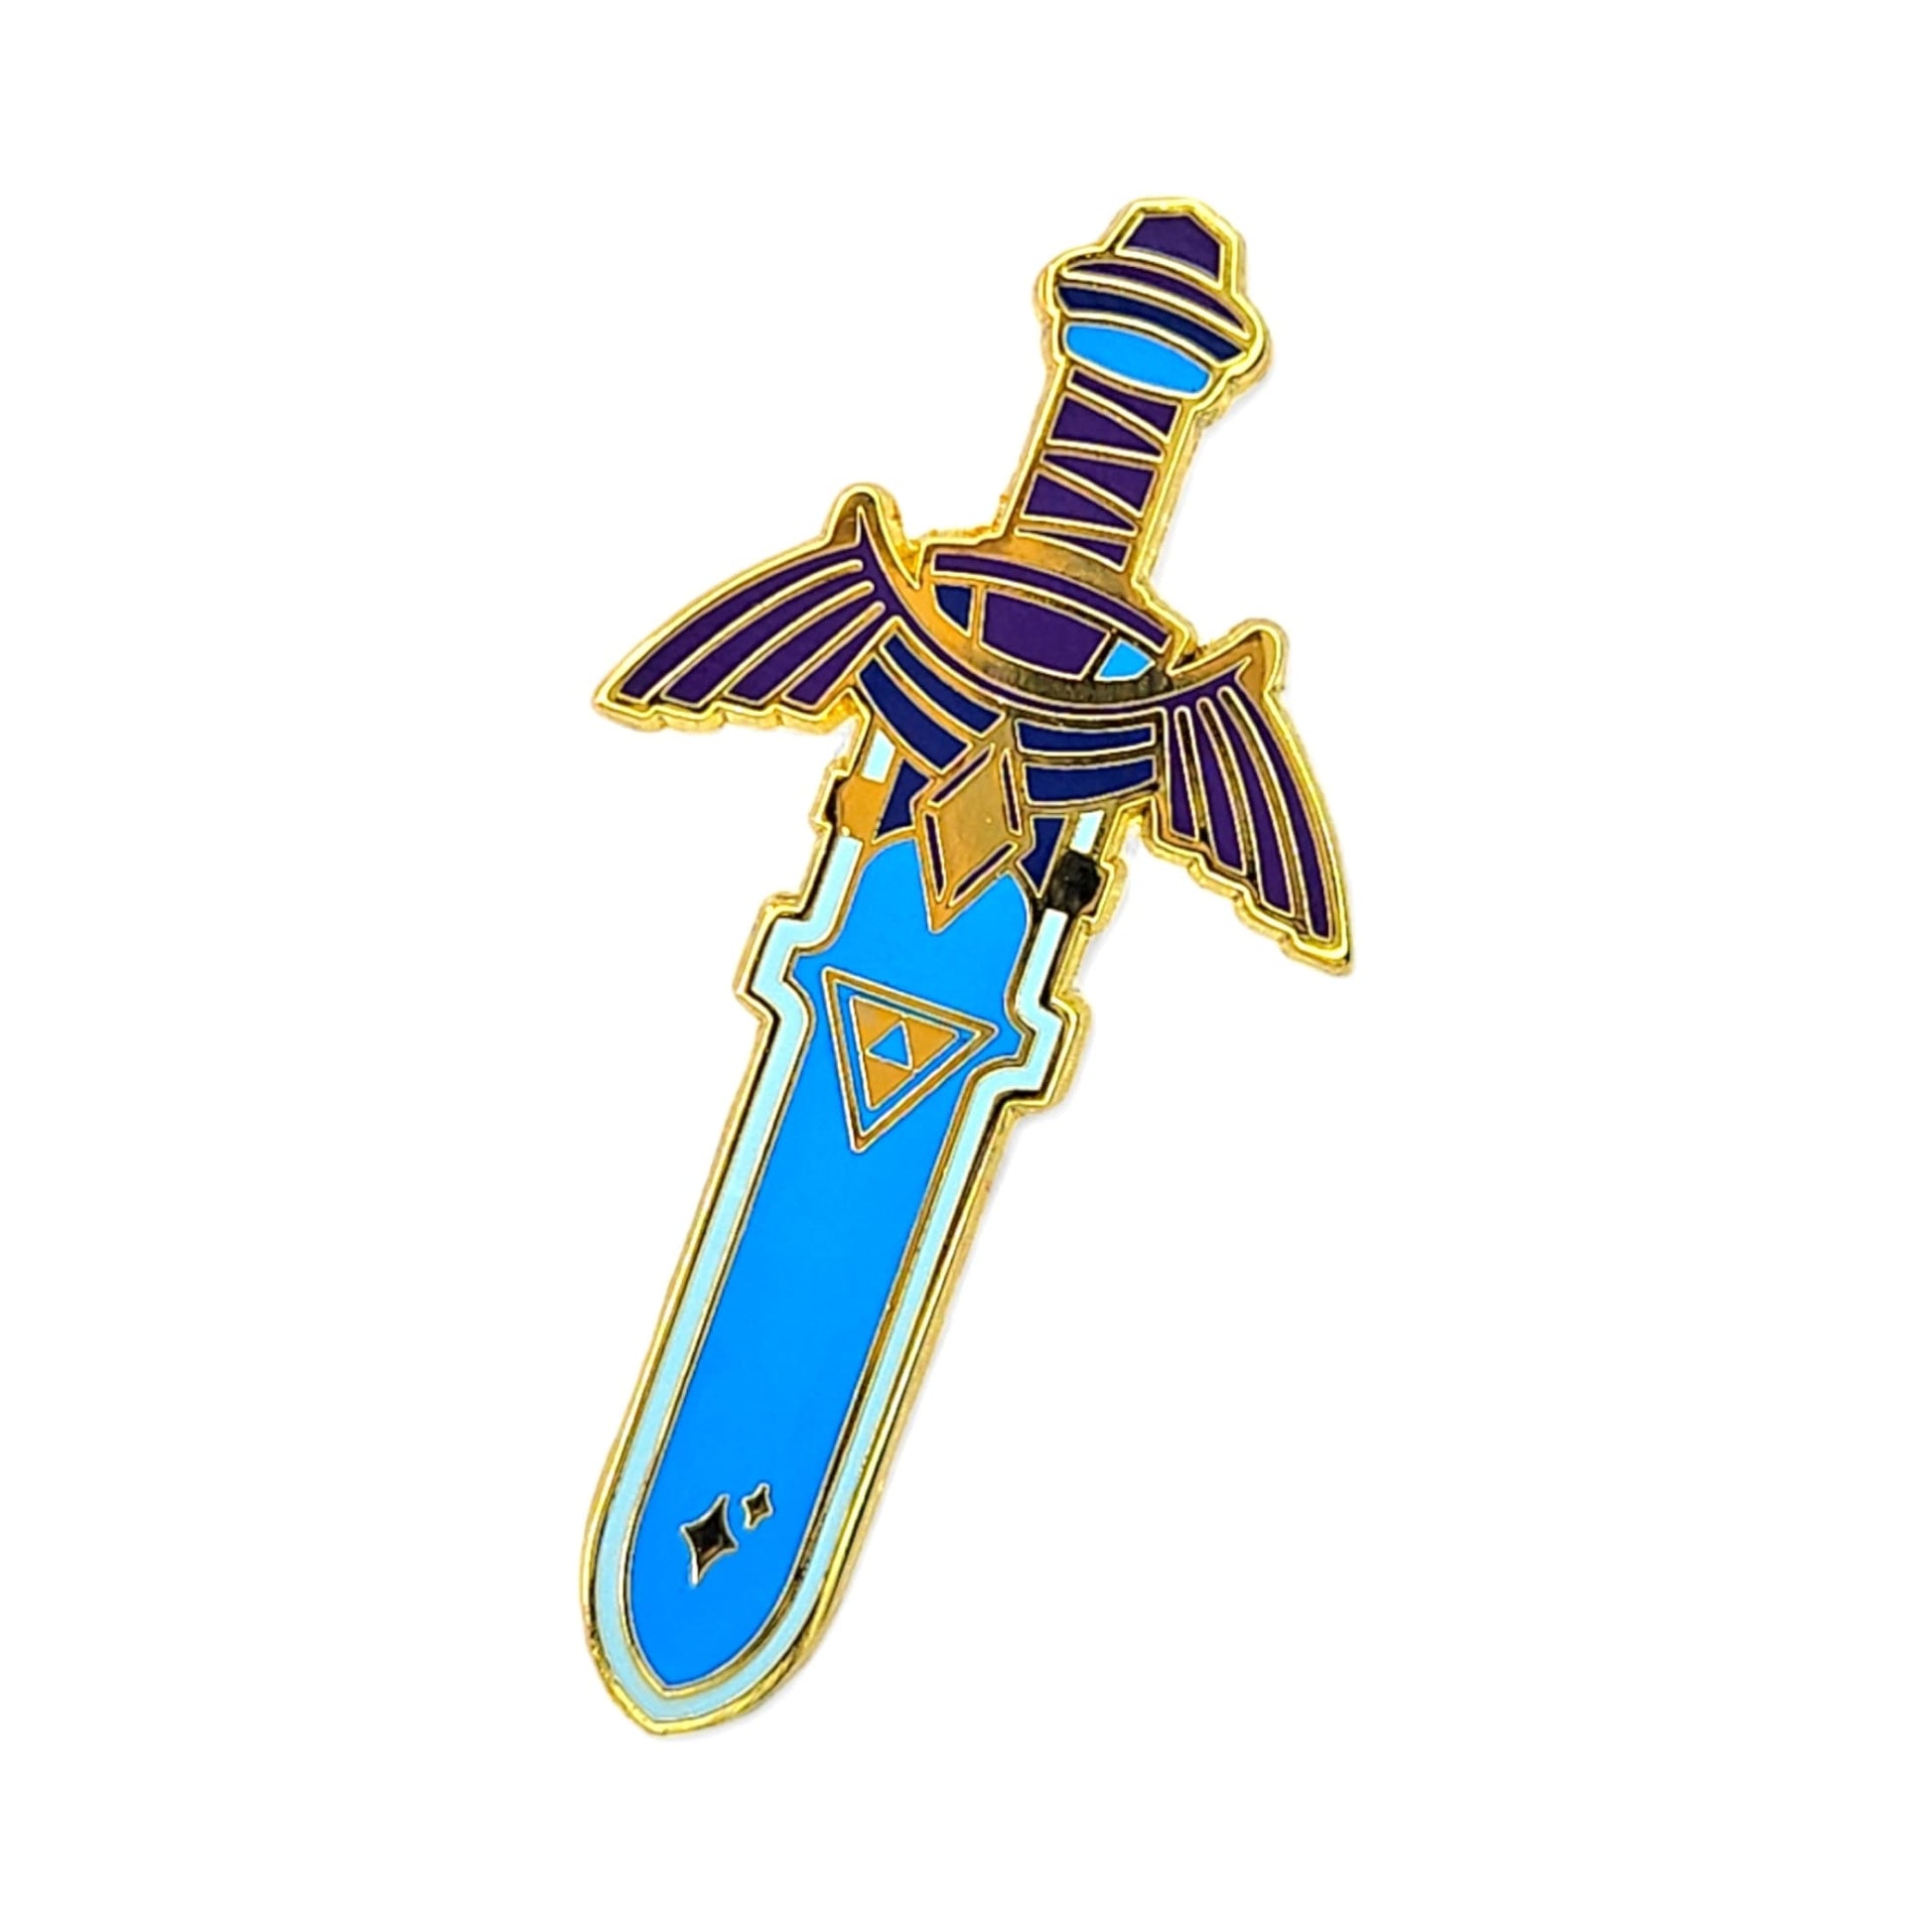 Legend of Zelda Sword Enamel Pin from Confetti Kitty, Only 8